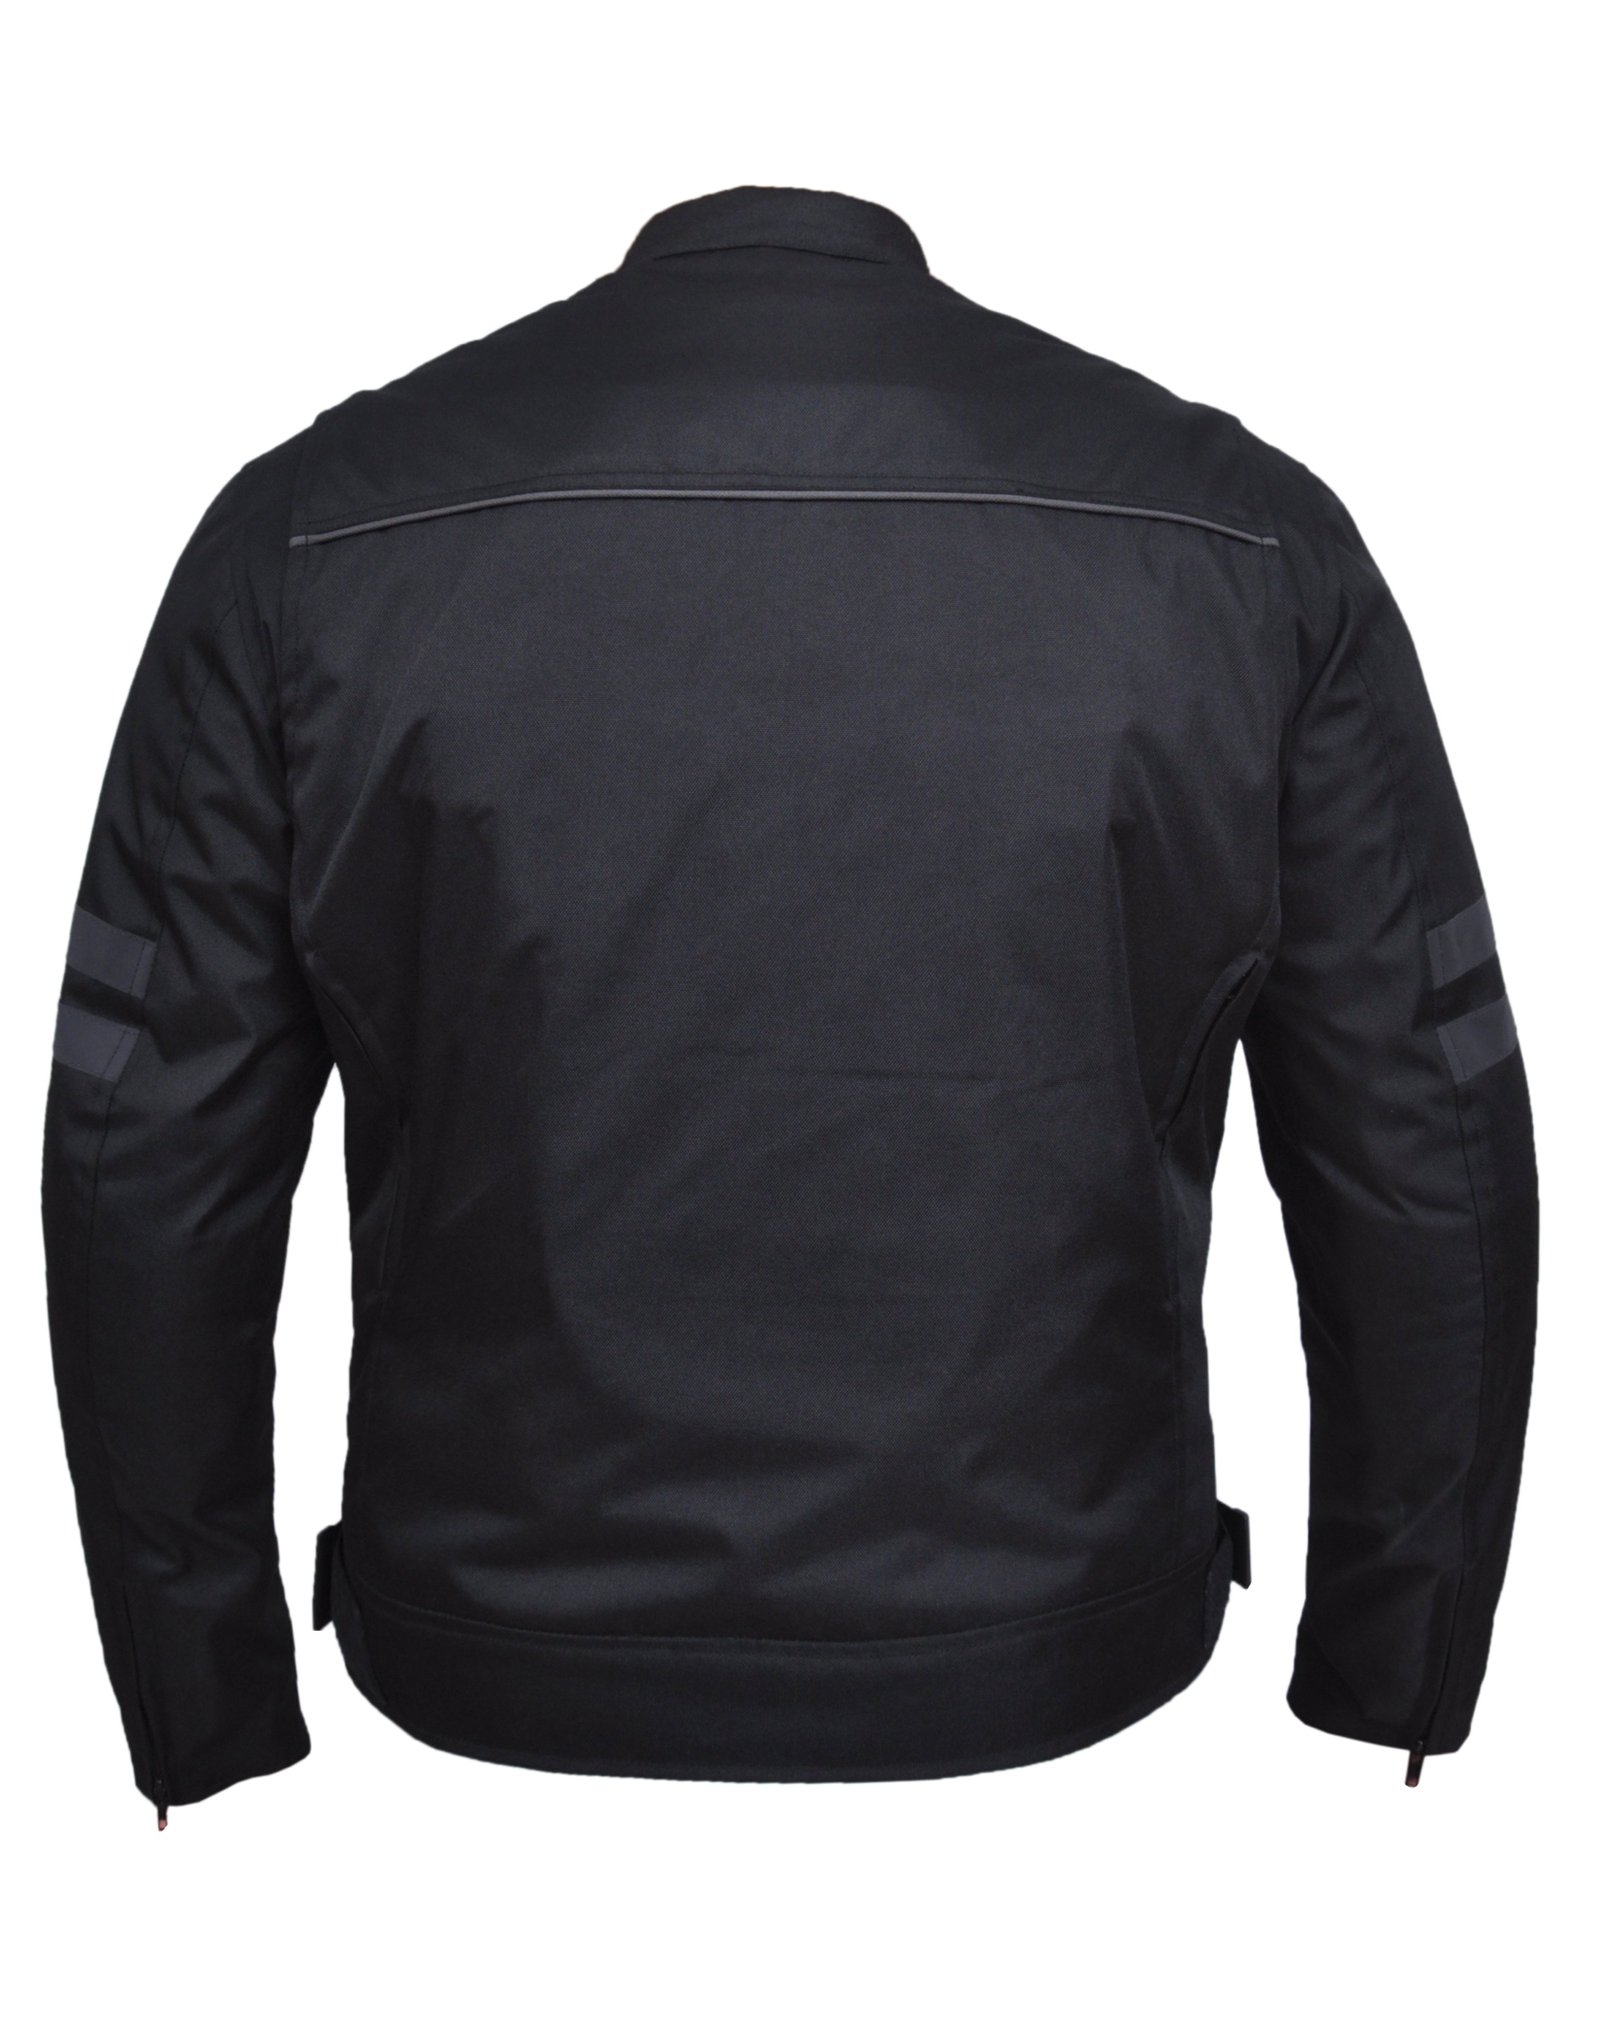 Men's Nylon Textile Racer Style Jacket -SKU K-2148-00-UN